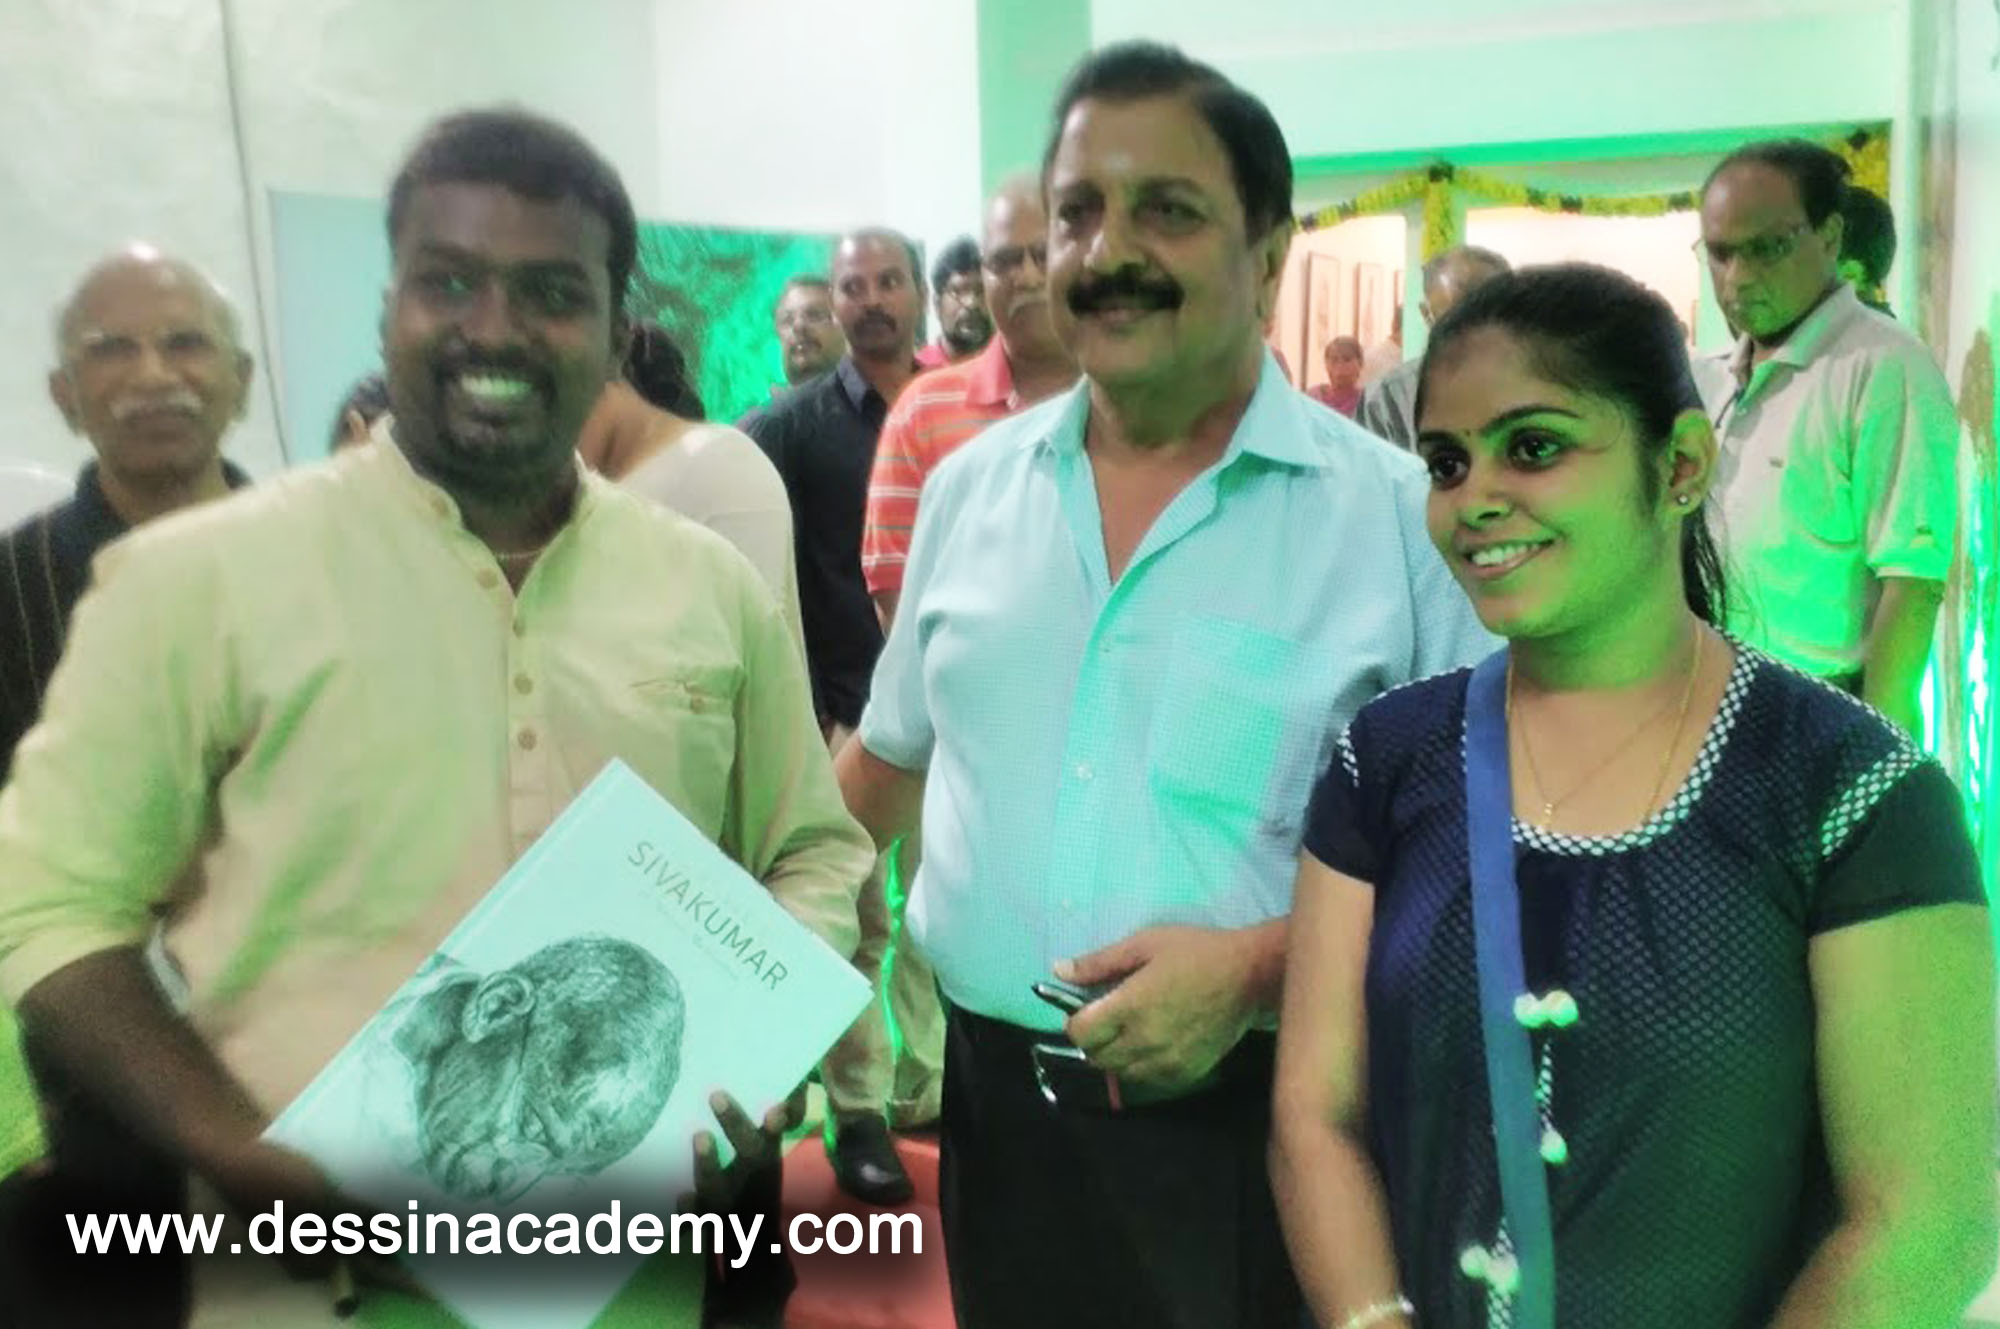 Dessin School of arts Event Gallery 4, Painting Institute in KotturpuramDessin School of Arts